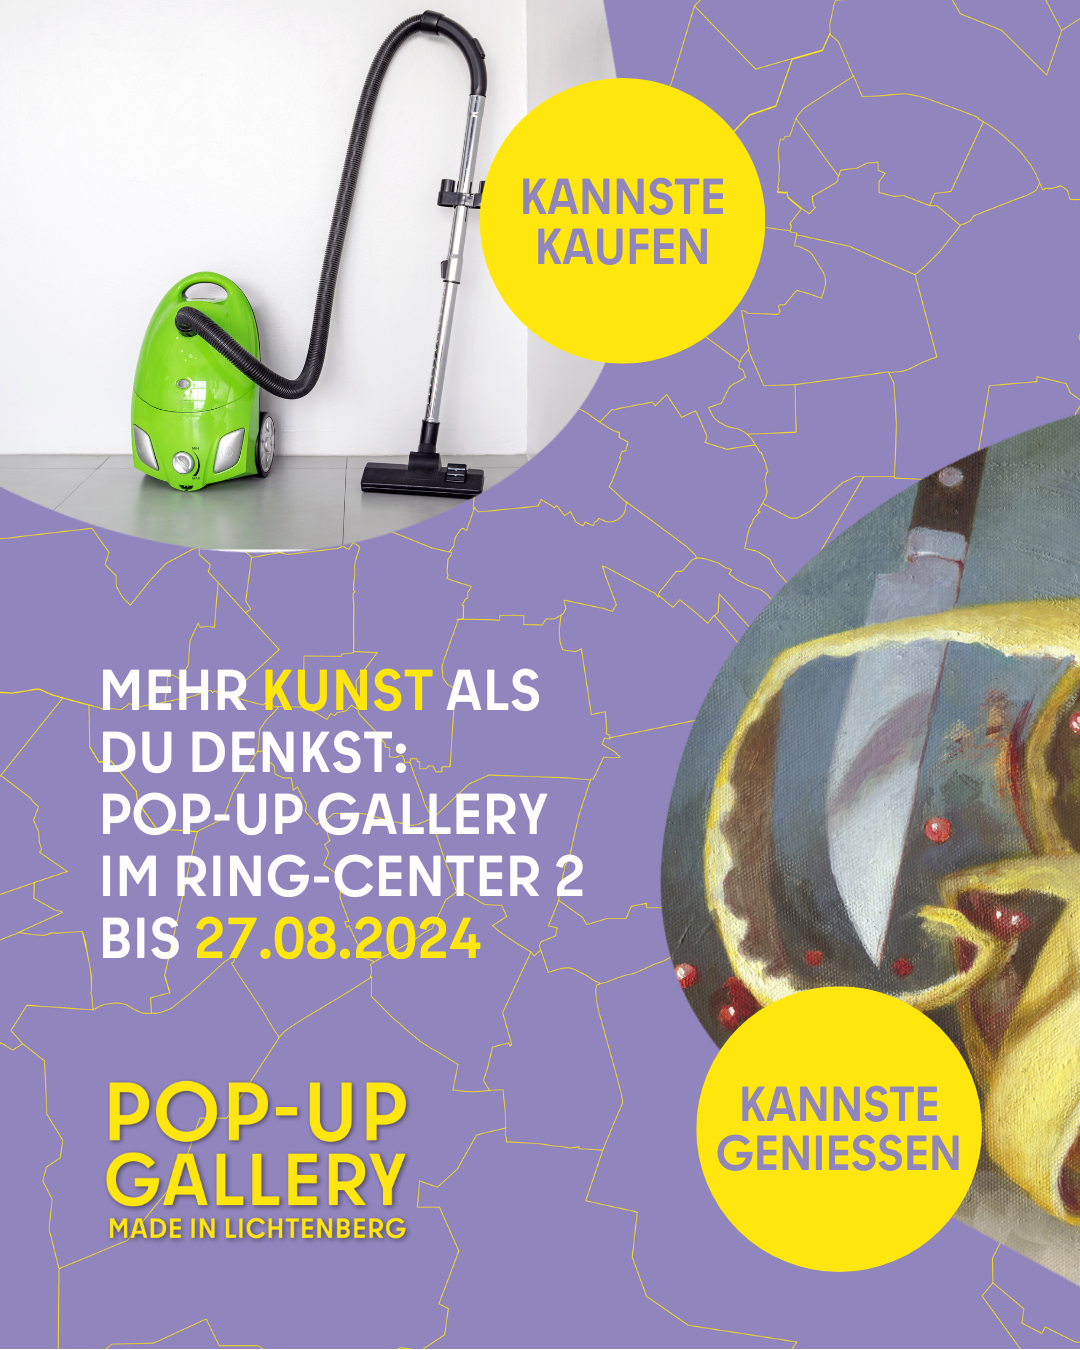 Kunst-Ausstellung, Pop-up Gallery im Ringcenter Berlin, Ulrich Raschke Fotografien